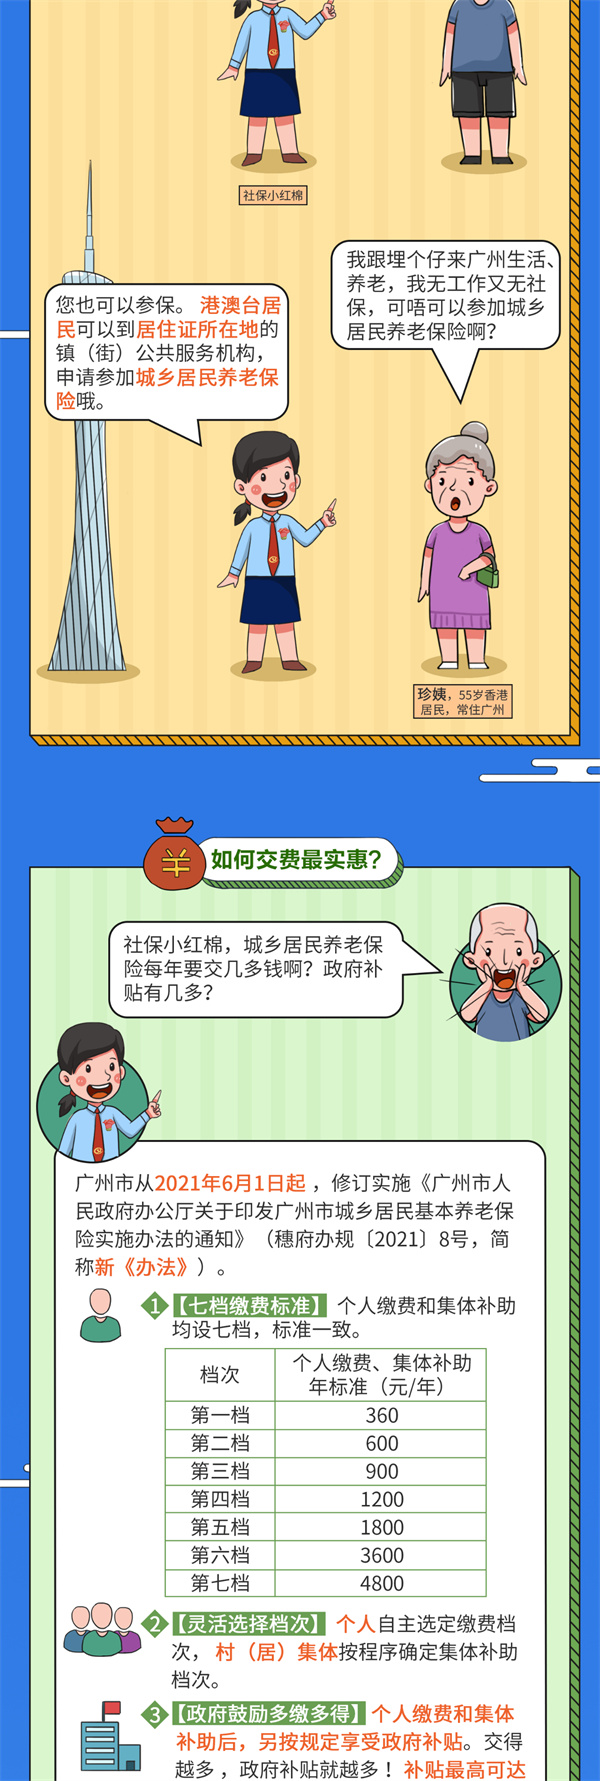 广州市城乡居民养老保险新办法